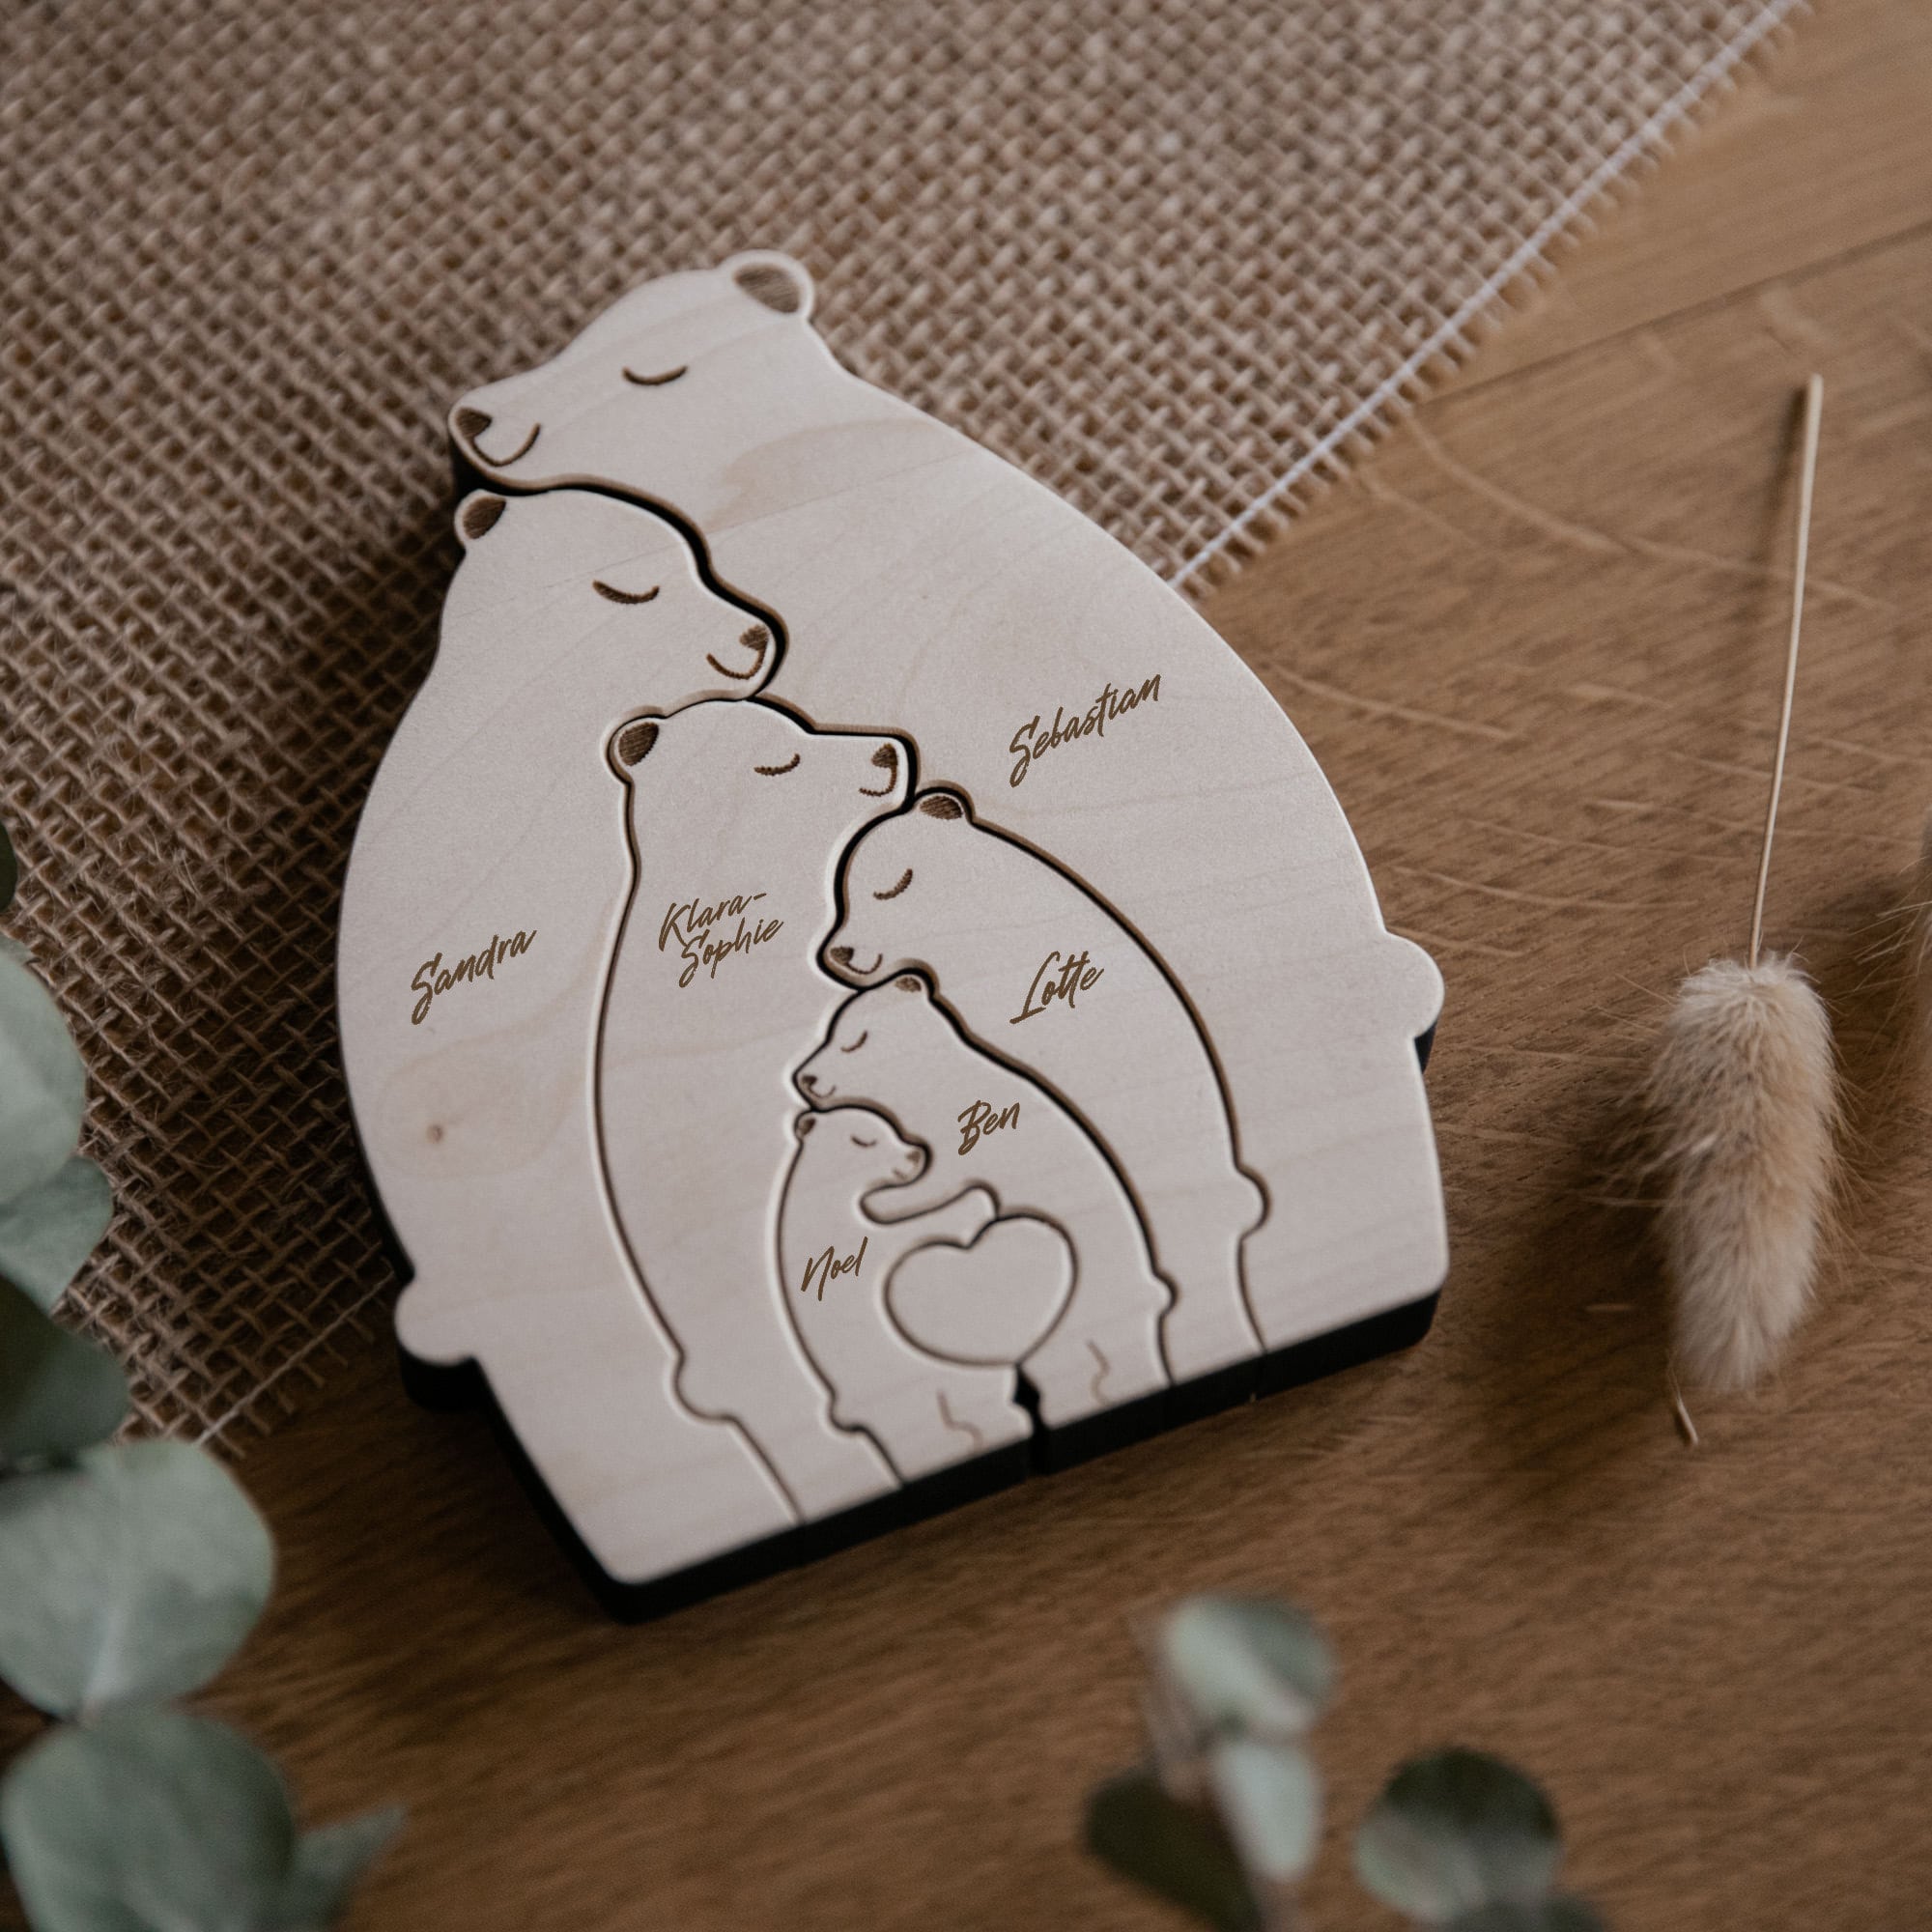 Personalisierte Bärenfamilie aus Holz mit 1 bis 4 Kinder / Familienpuzzle Bären / Bären aus Holz mit Namen graviert / Weihnachtsgeschenk